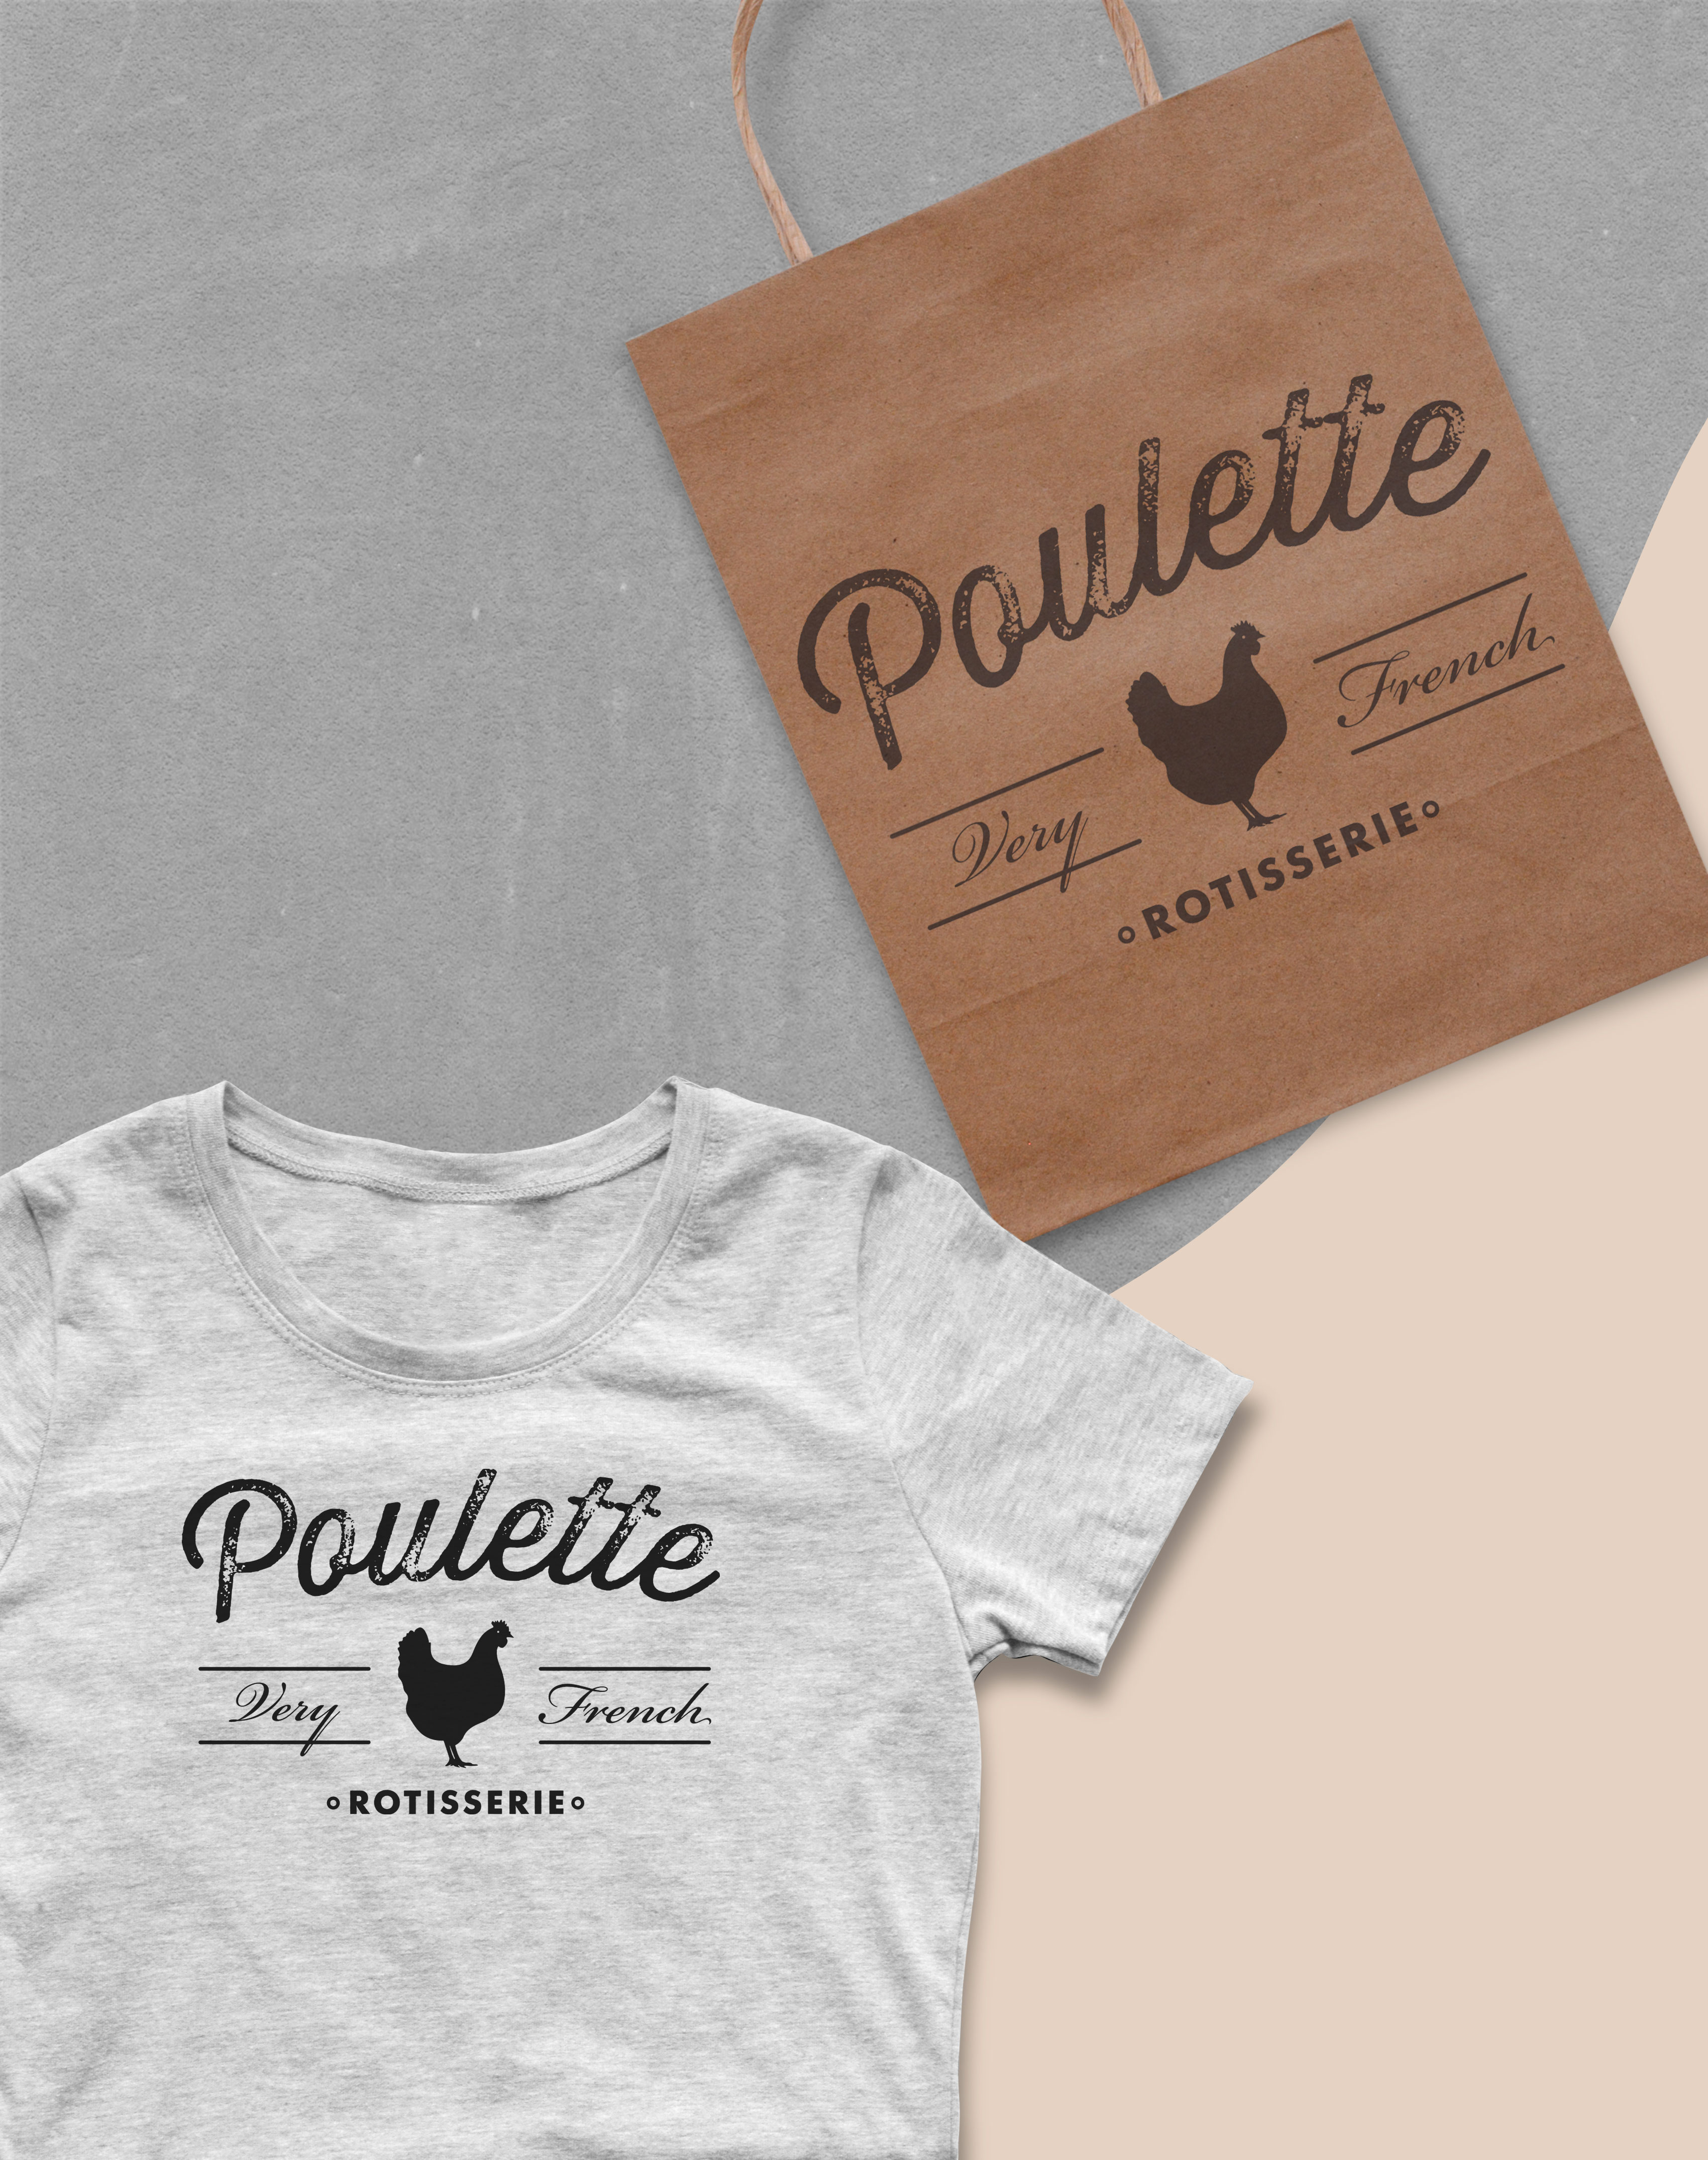 Poulette-shop